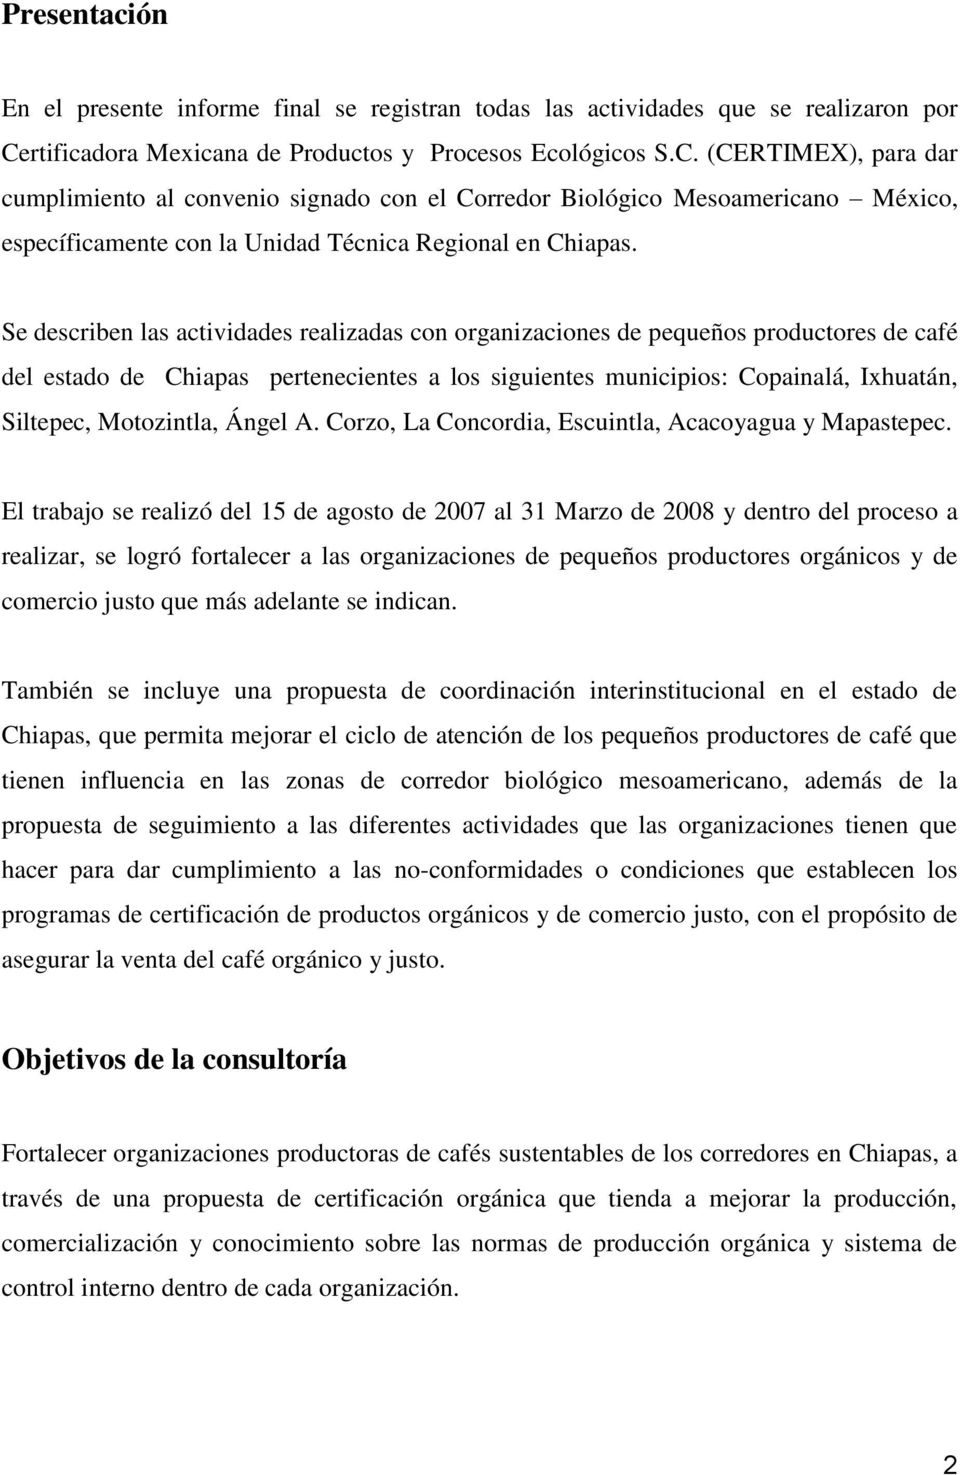 (CERTIMEX), para dar cumplimiento al convenio signado con el Corredor Biológico Mesoamericano México, específicamente con la Unidad Técnica Regional en Chiapas.